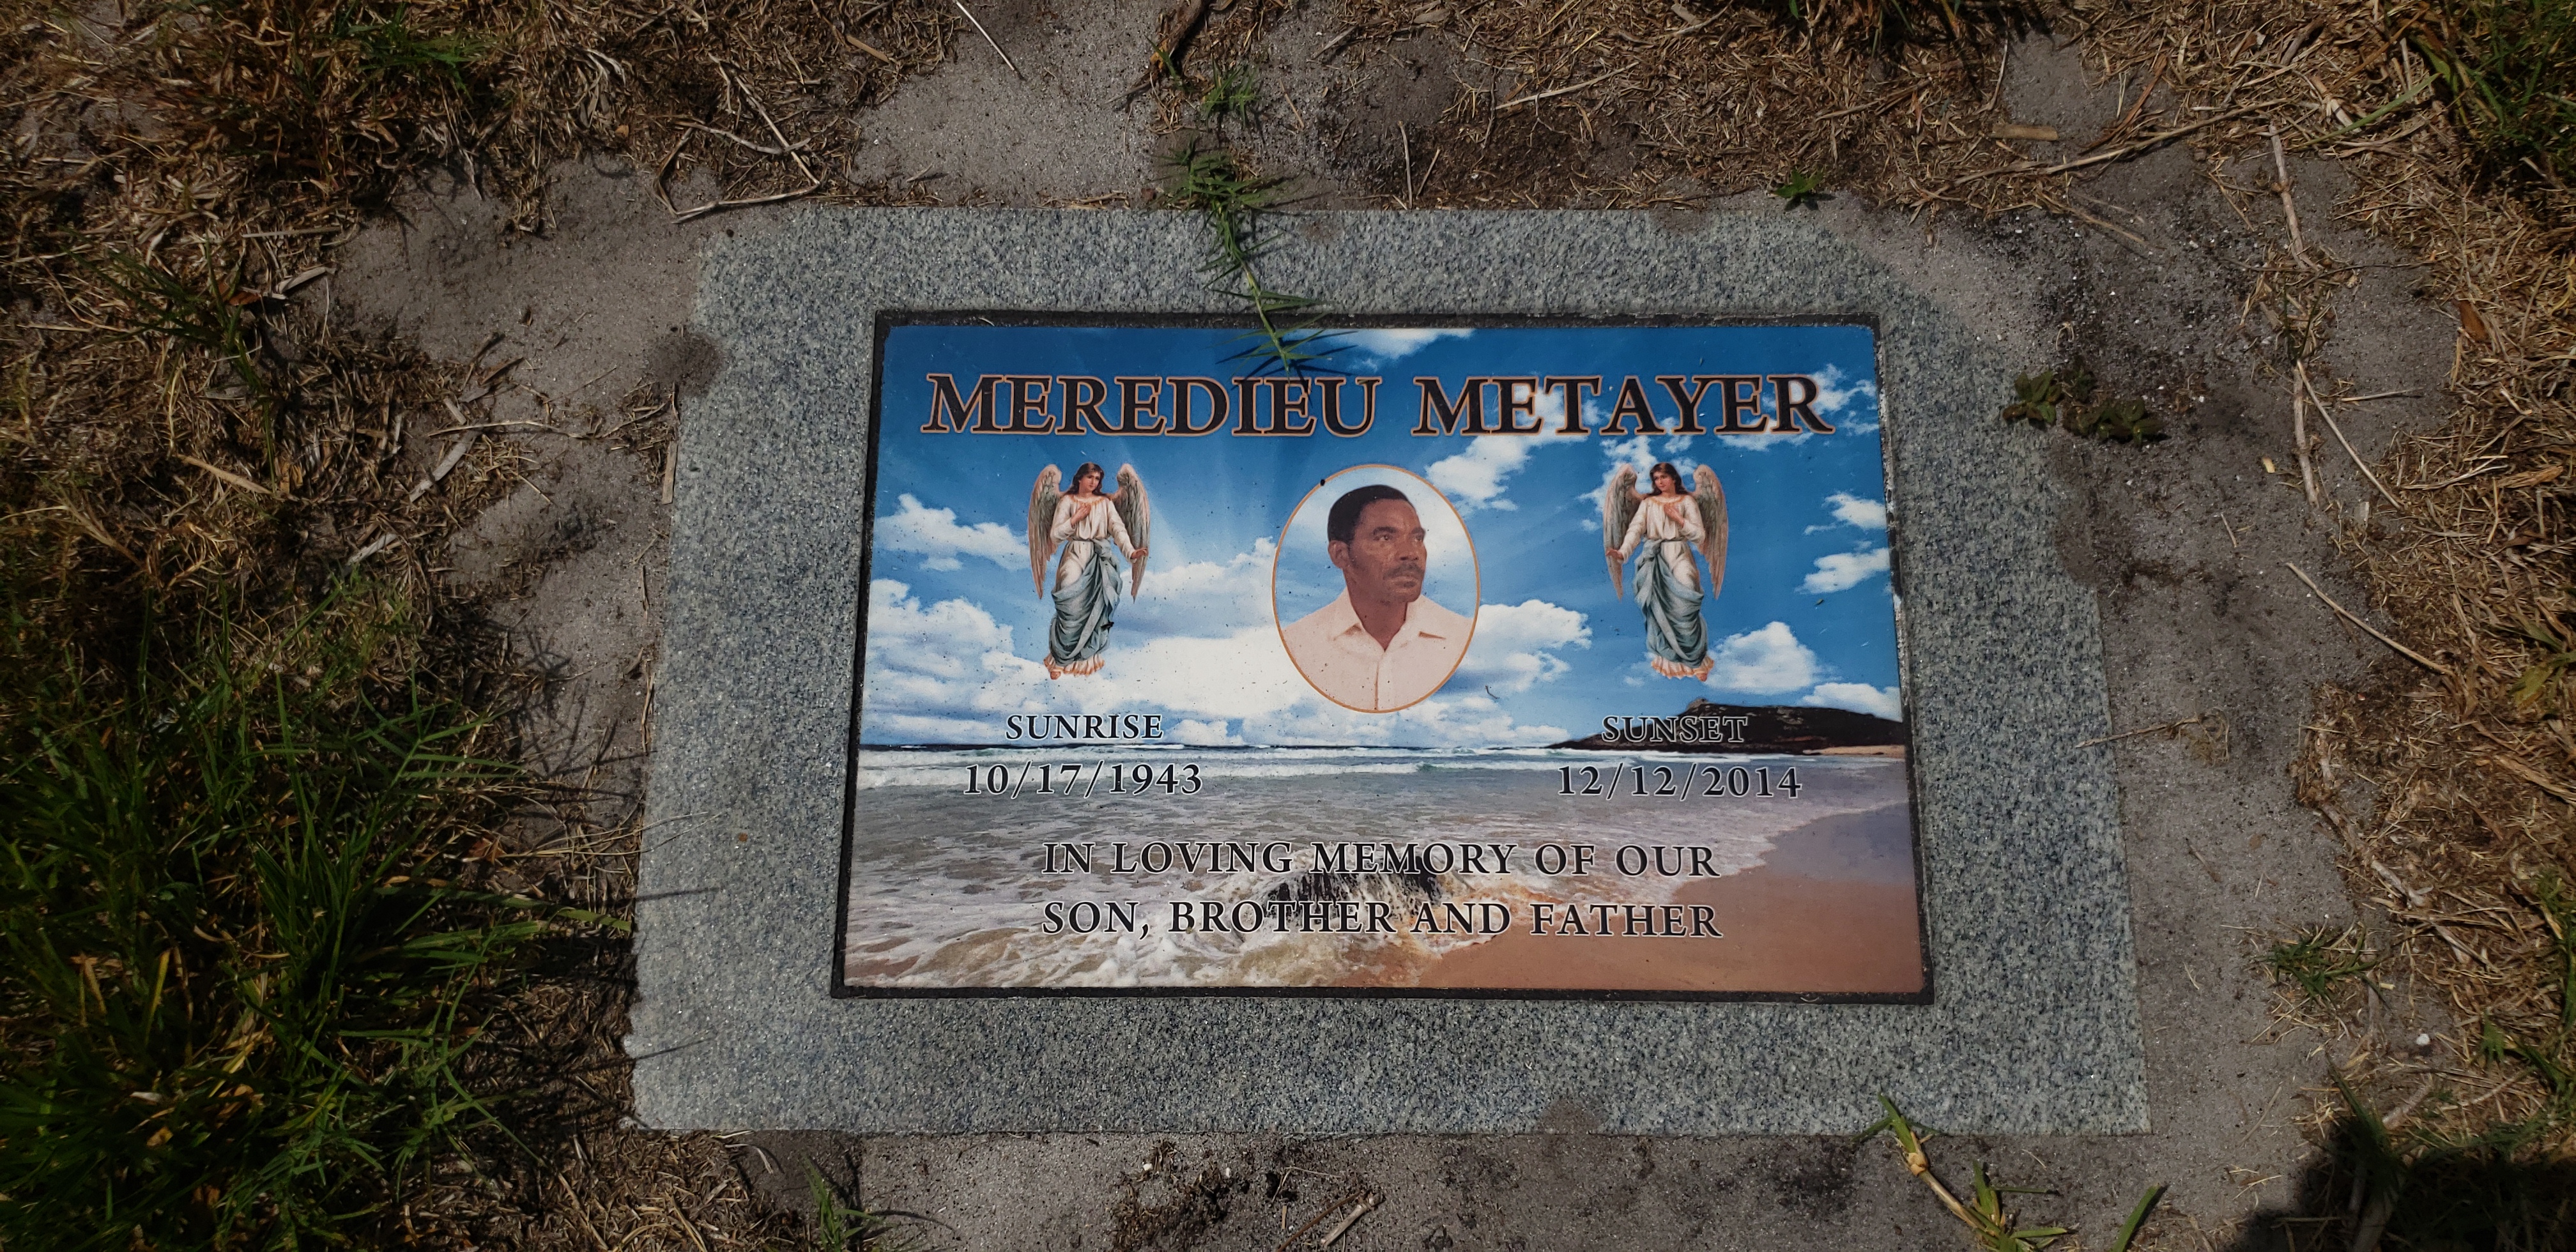 Meredieu Metayer